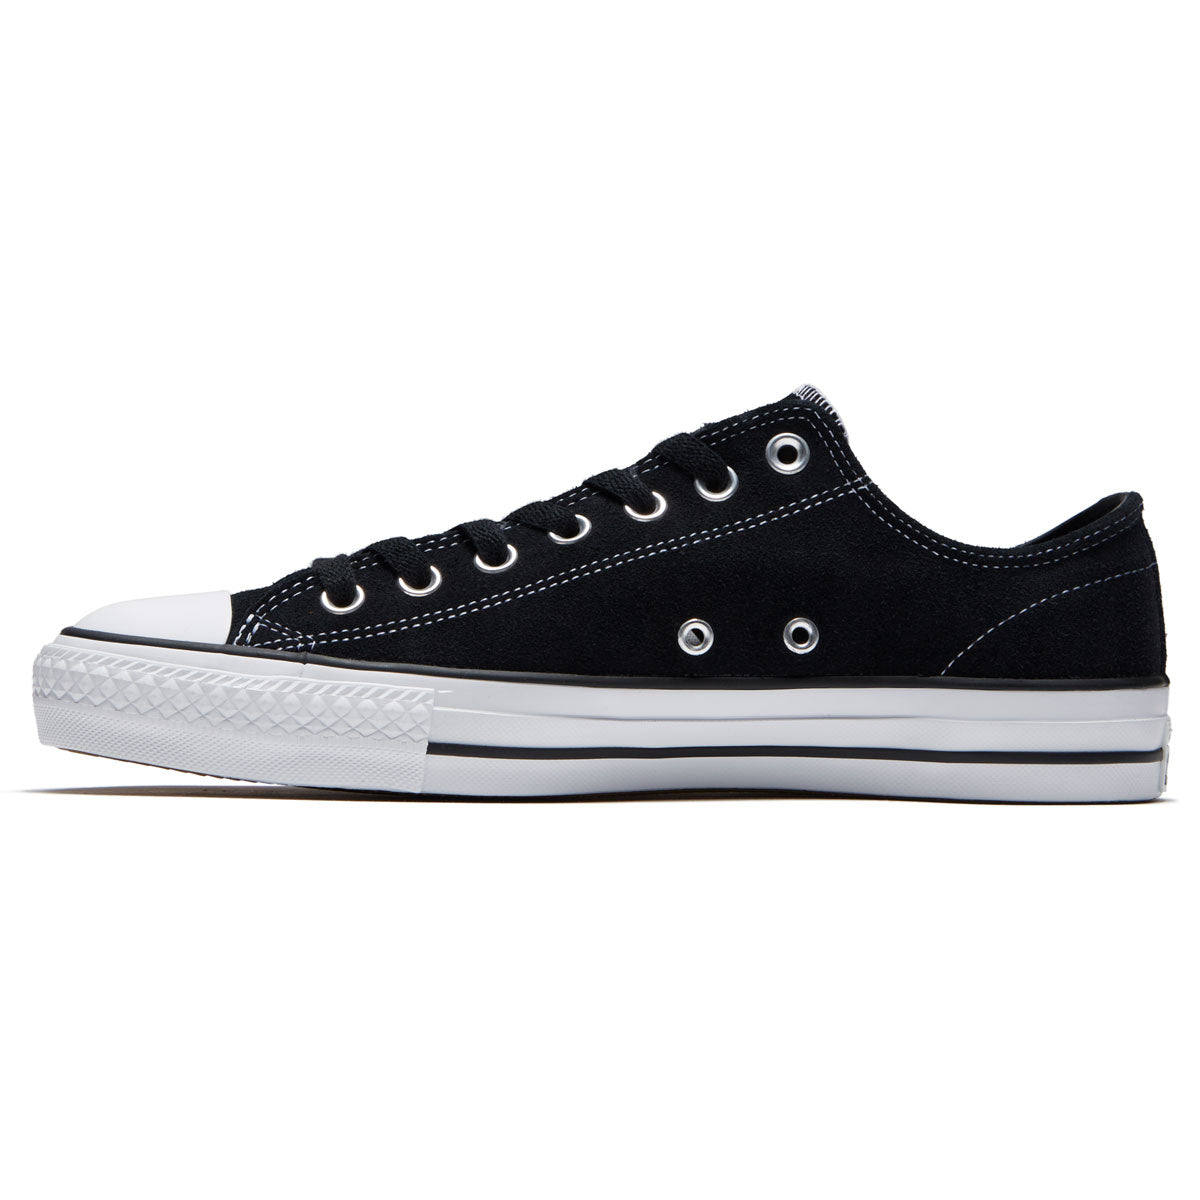 Datum halt Gylden Converse Chuck Taylor All Star Pro Suede Ox Shoes - Black/Black/White – CCS